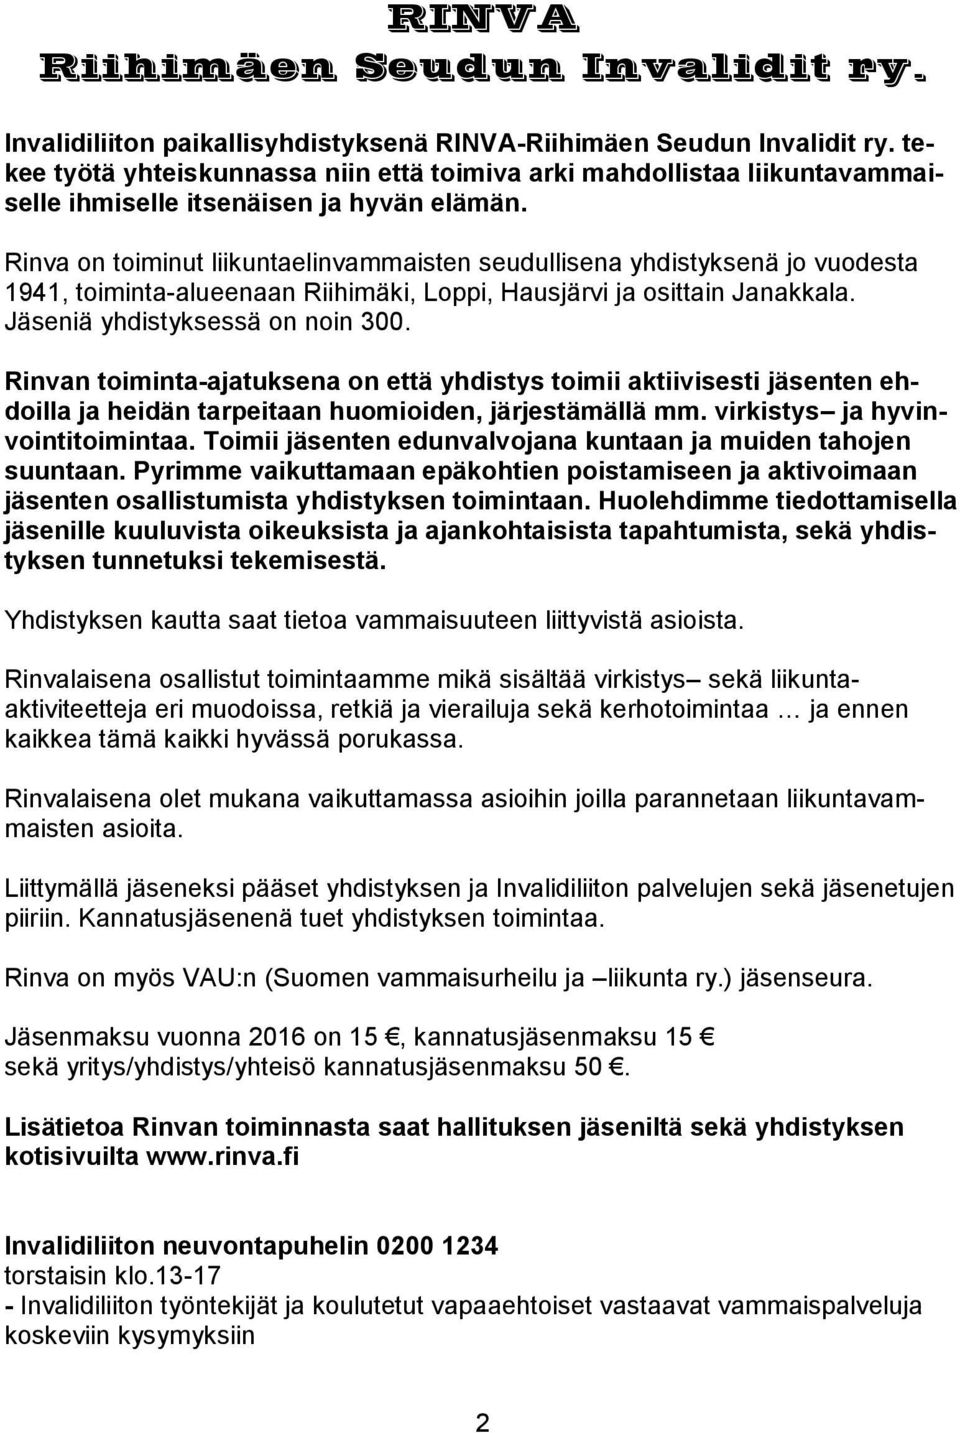 Rinva on toiminut liikuntaelinvammaisten seudullisena yhdistyksenä jo vuodesta 1941, toiminta-alueenaan Riihimäki, Loppi, Hausjärvi ja osittain Janakkala. Jäseniä yhdistyksessä on noin 300.